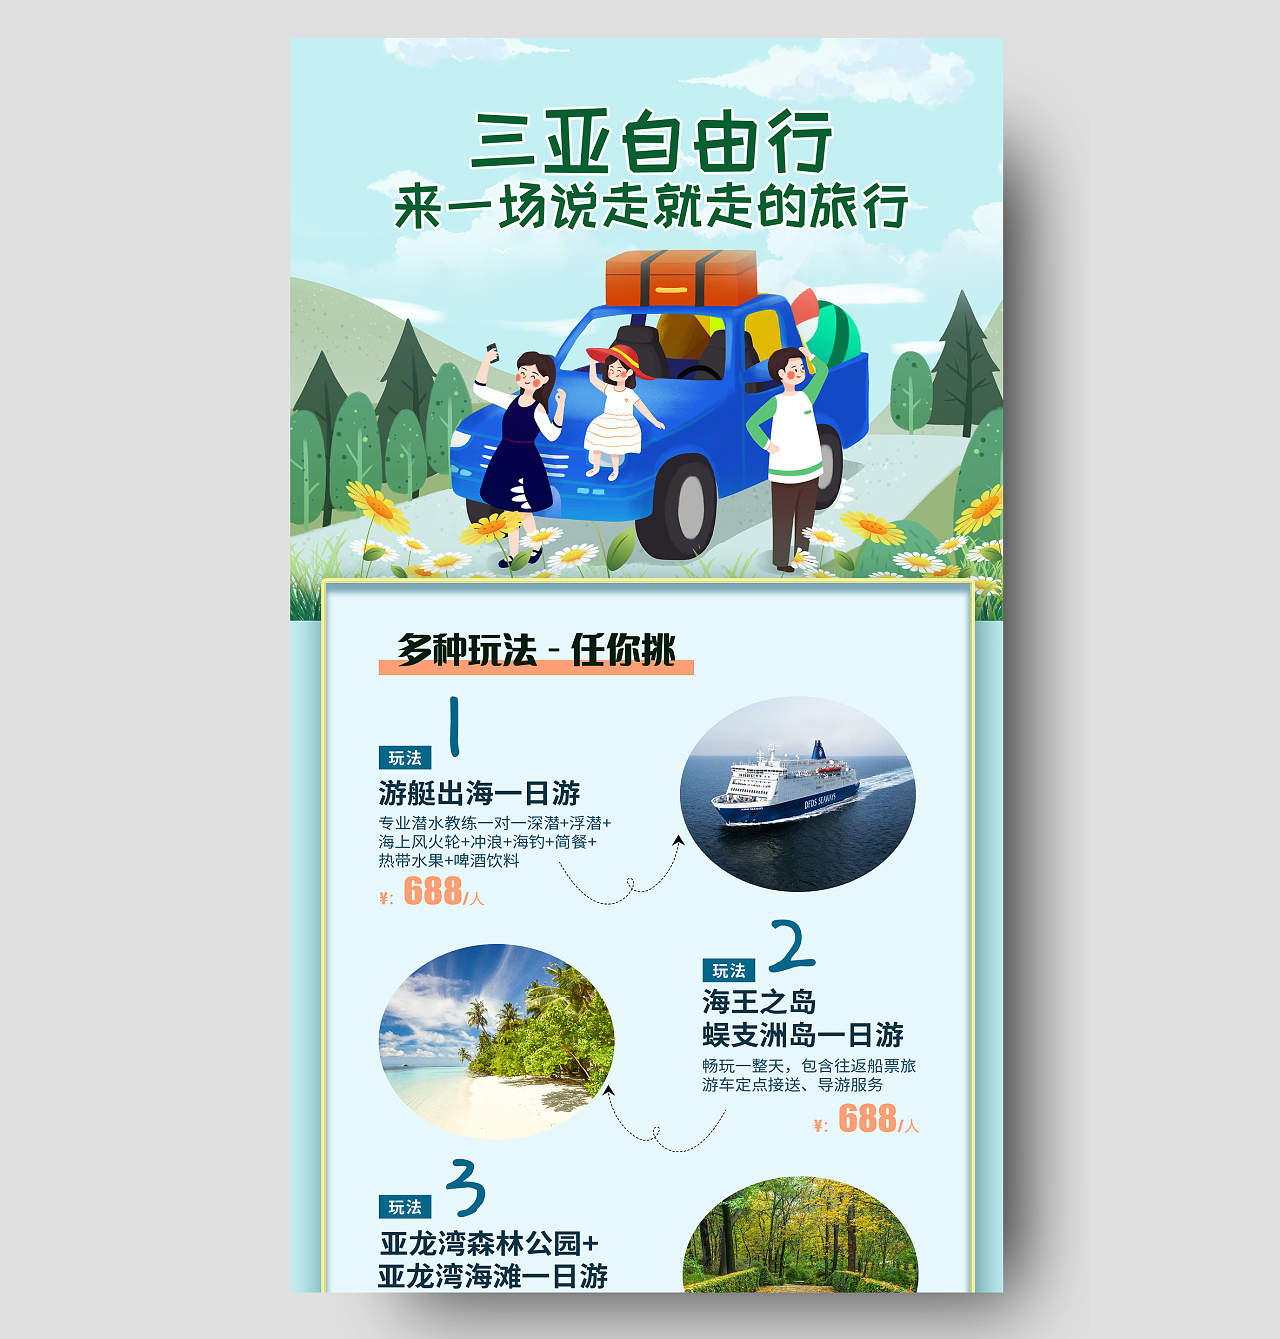 浅绿色插画风三亚旅游宣传长图旅行宣传单旅游长图